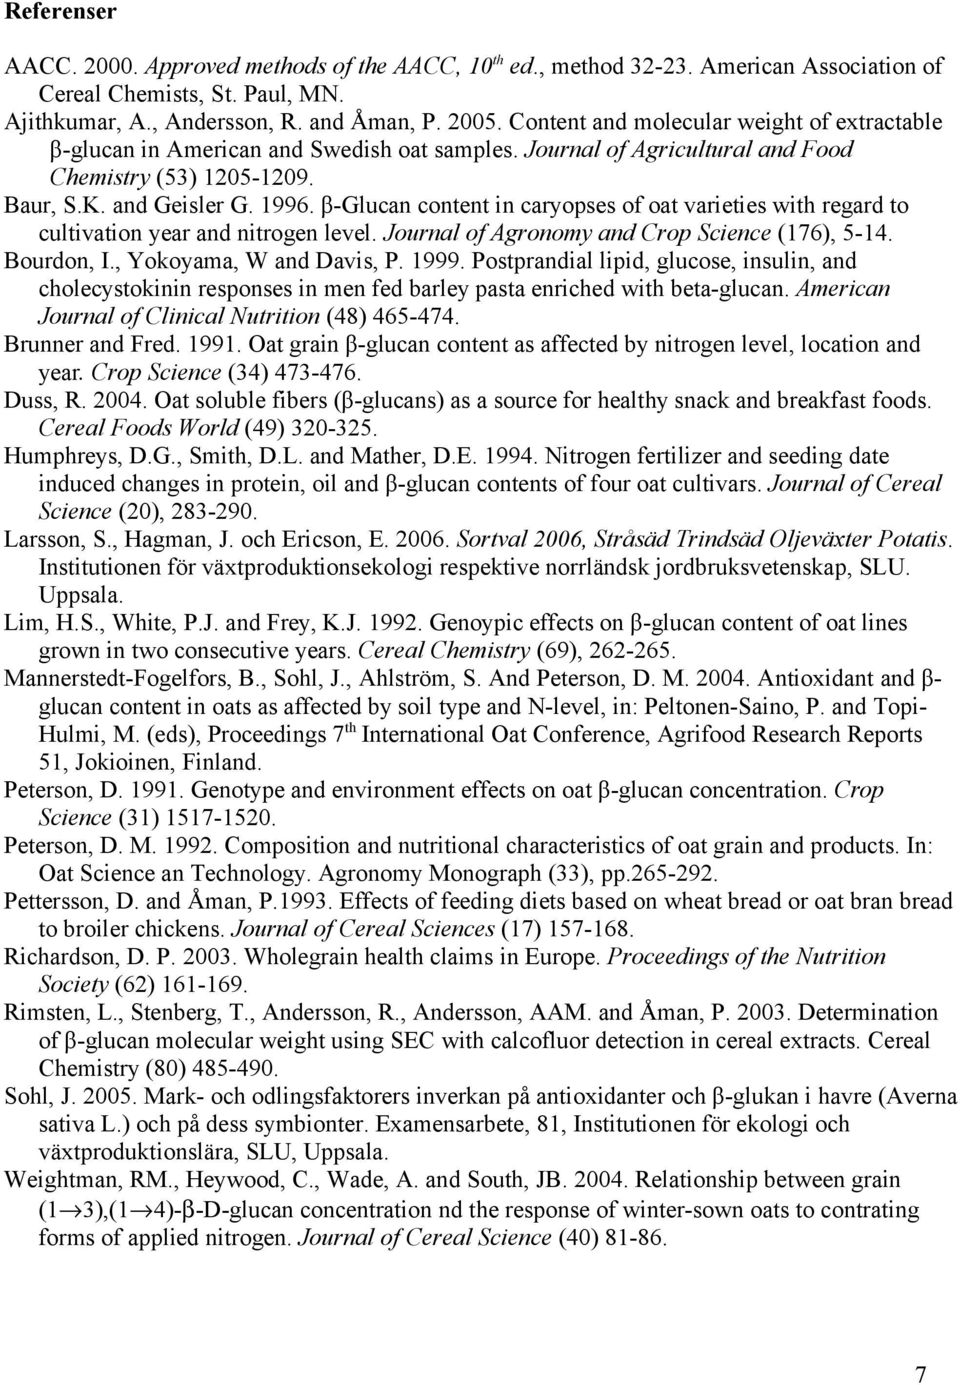 β-glucan content in caryopses of oat varieties with regard to cultivation year and nitrogen level. Journal of Agronomy and Crop Science (176), 5-14. Bourdon, I., Yokoyama, W and Davis, P. 1999.